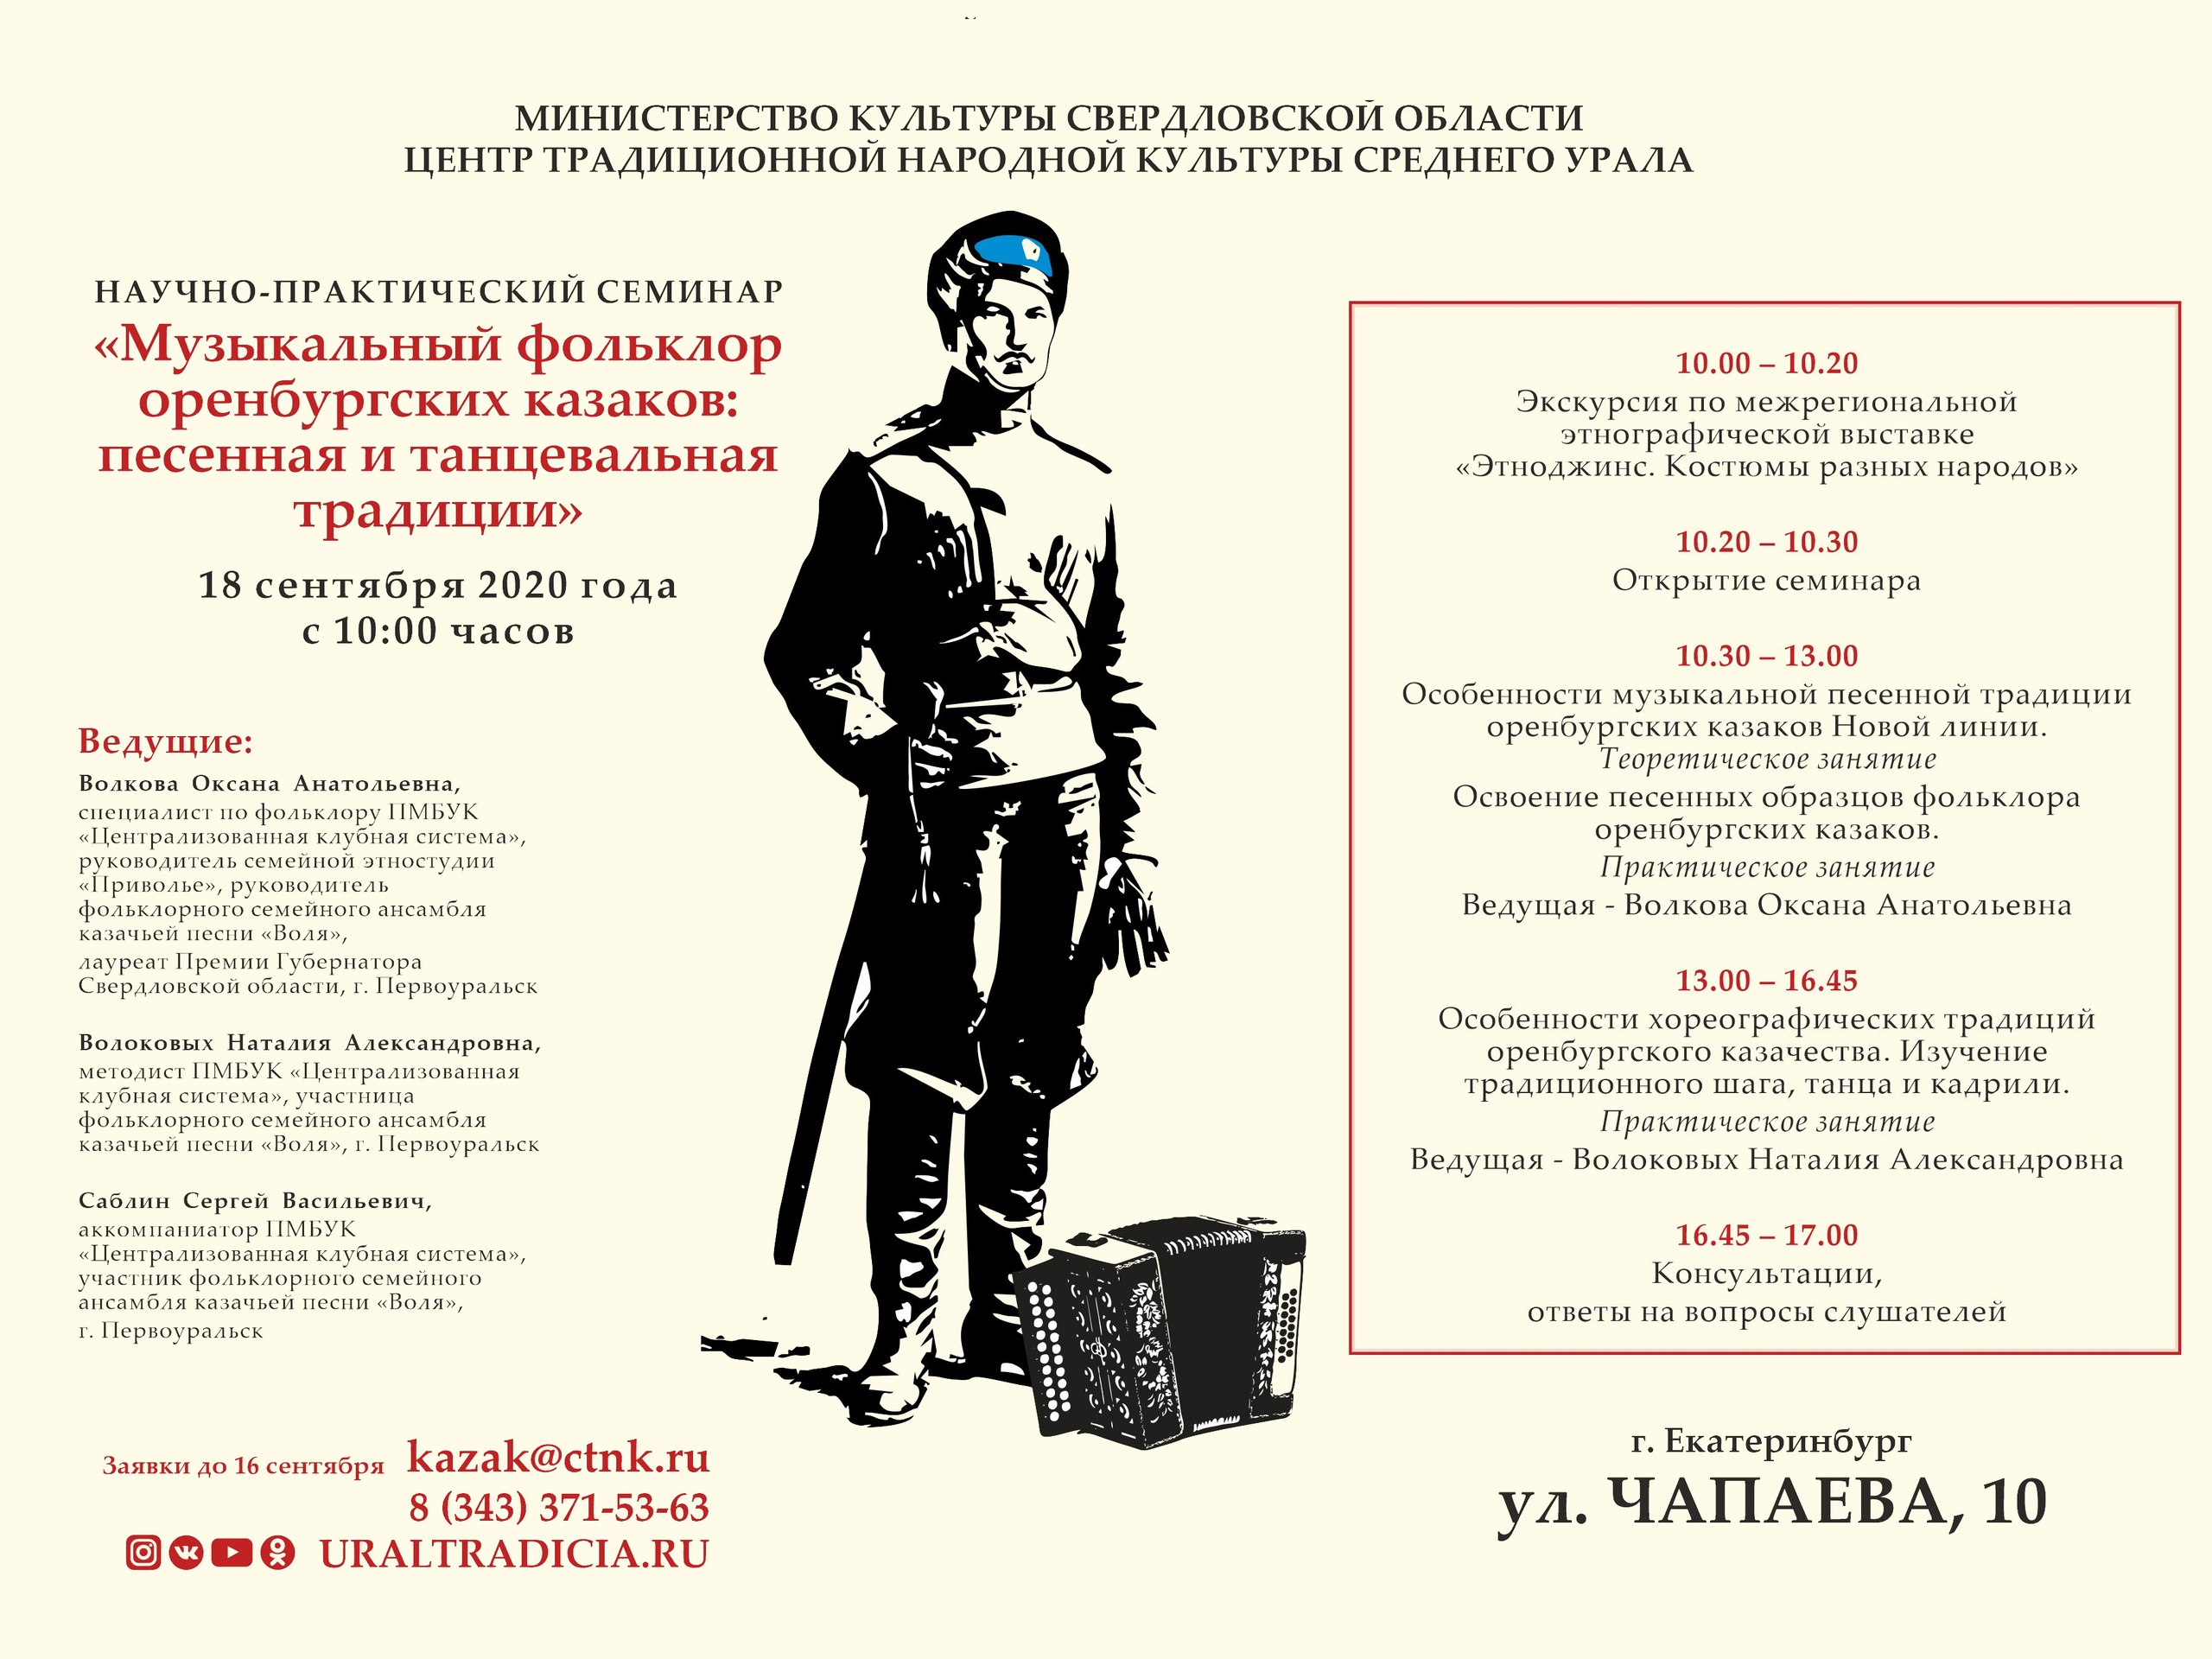 Приглашаем на семинар «Музыкальный фольклор оренбургских казаков: песенная и танцевальная традиции»